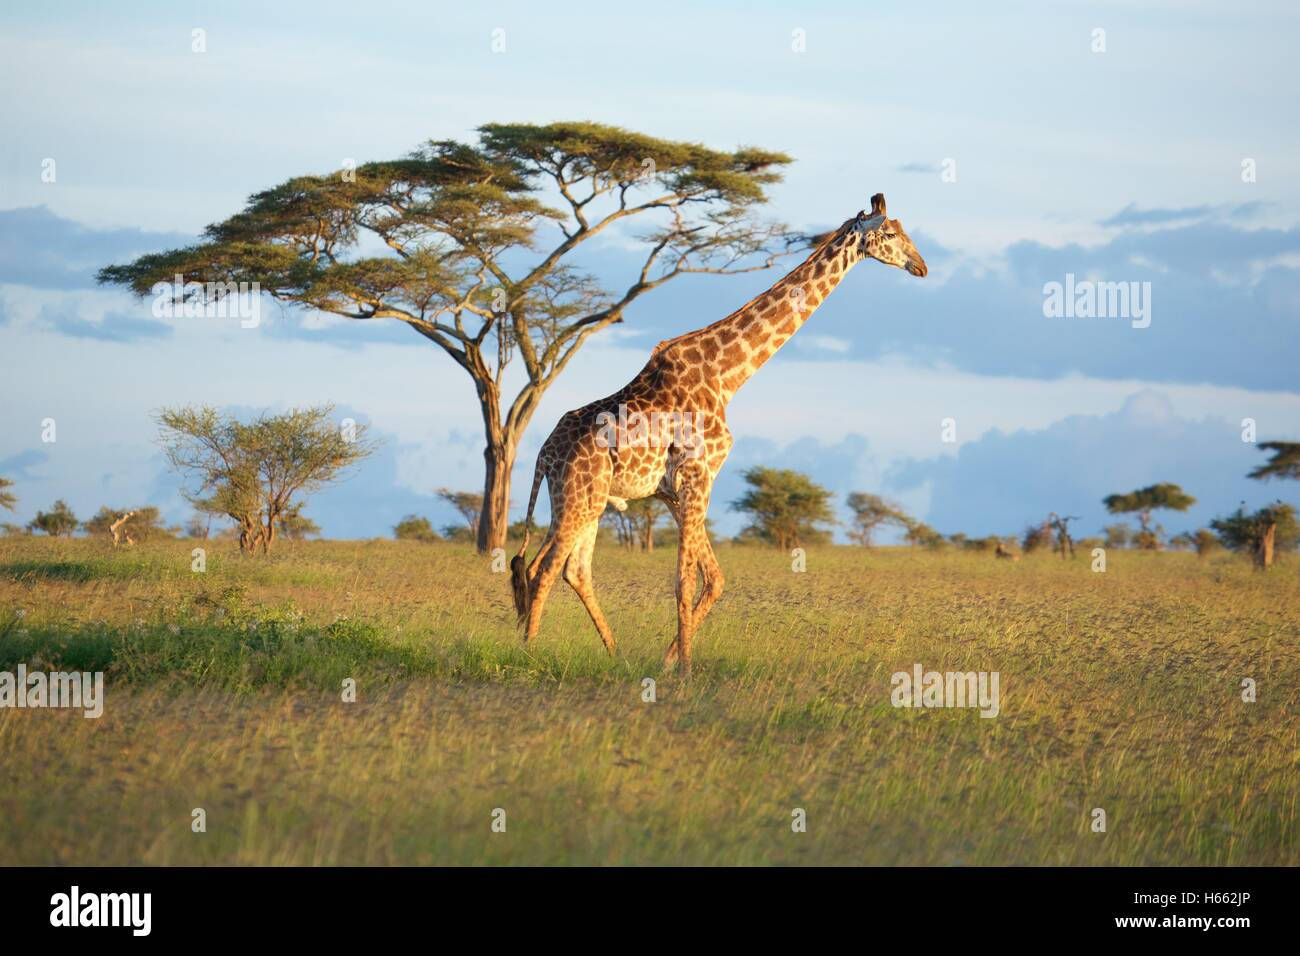 Ver jirafa salvaje en un safari en el Parque nacional Serengeti, Tanzania. Foto de stock